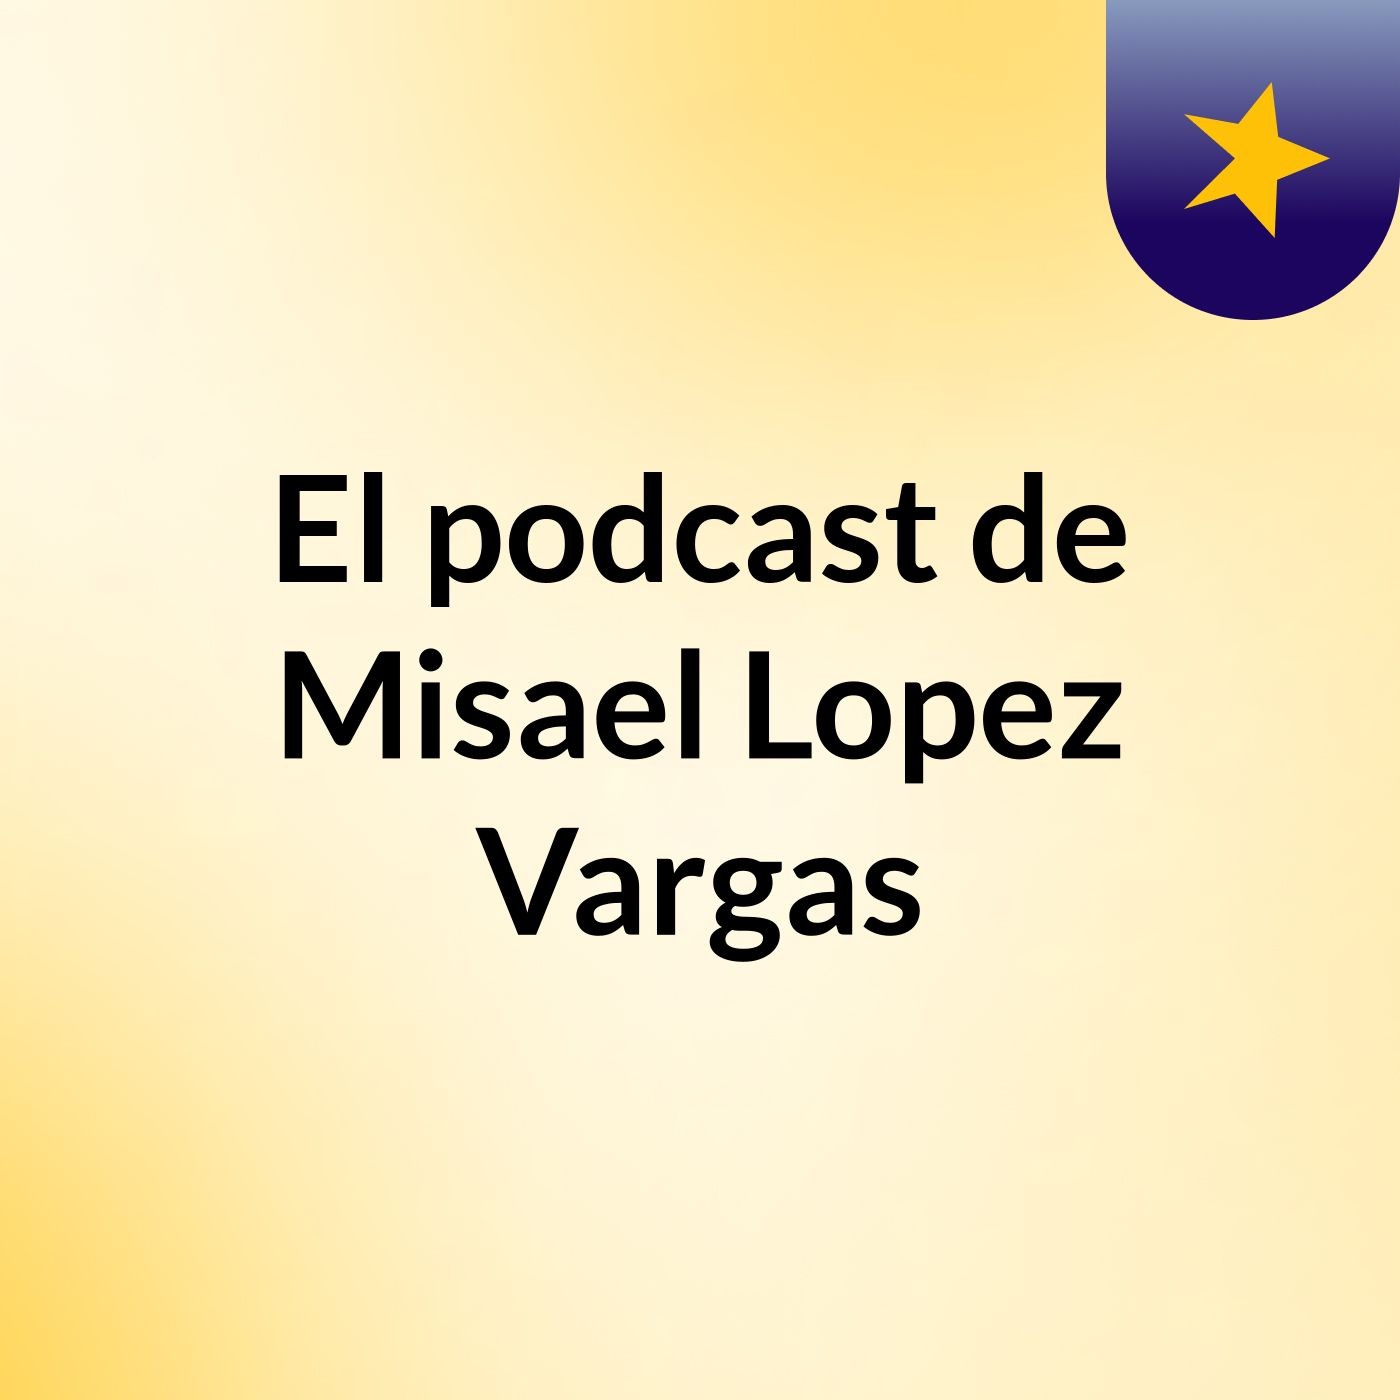 Episodio 4 - El podcast de Misael Lopez Vargas